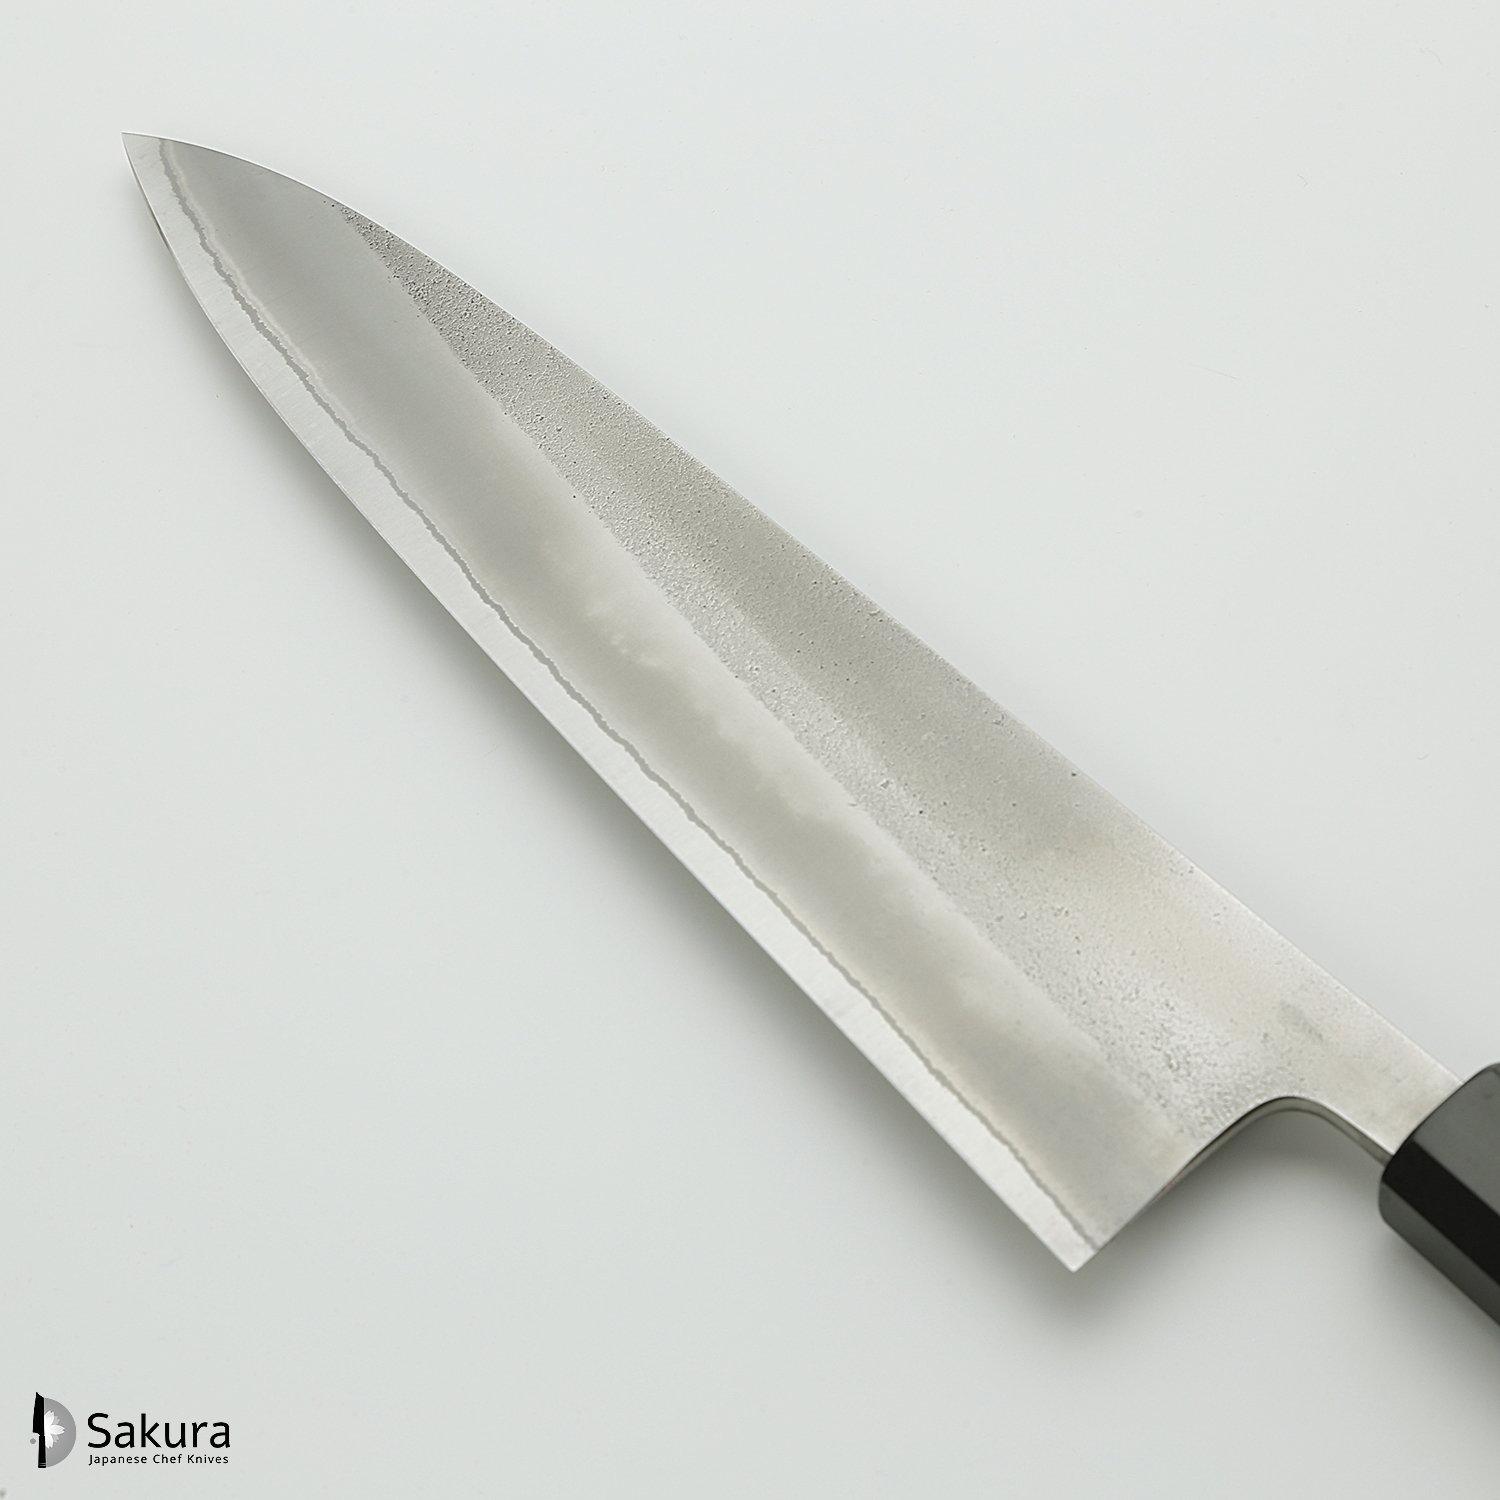 סכין שף רב-תכליתית גִּיוּטוֹ 210מ״מ מחושלת בעבודת יד 3 שכבות: פלדת פחמן יפנית מתקדמת מסוג Shirogami #2 עטופה פלדת אל-חלד גימור מט חיספוס טבעי יושיקאנה יפן